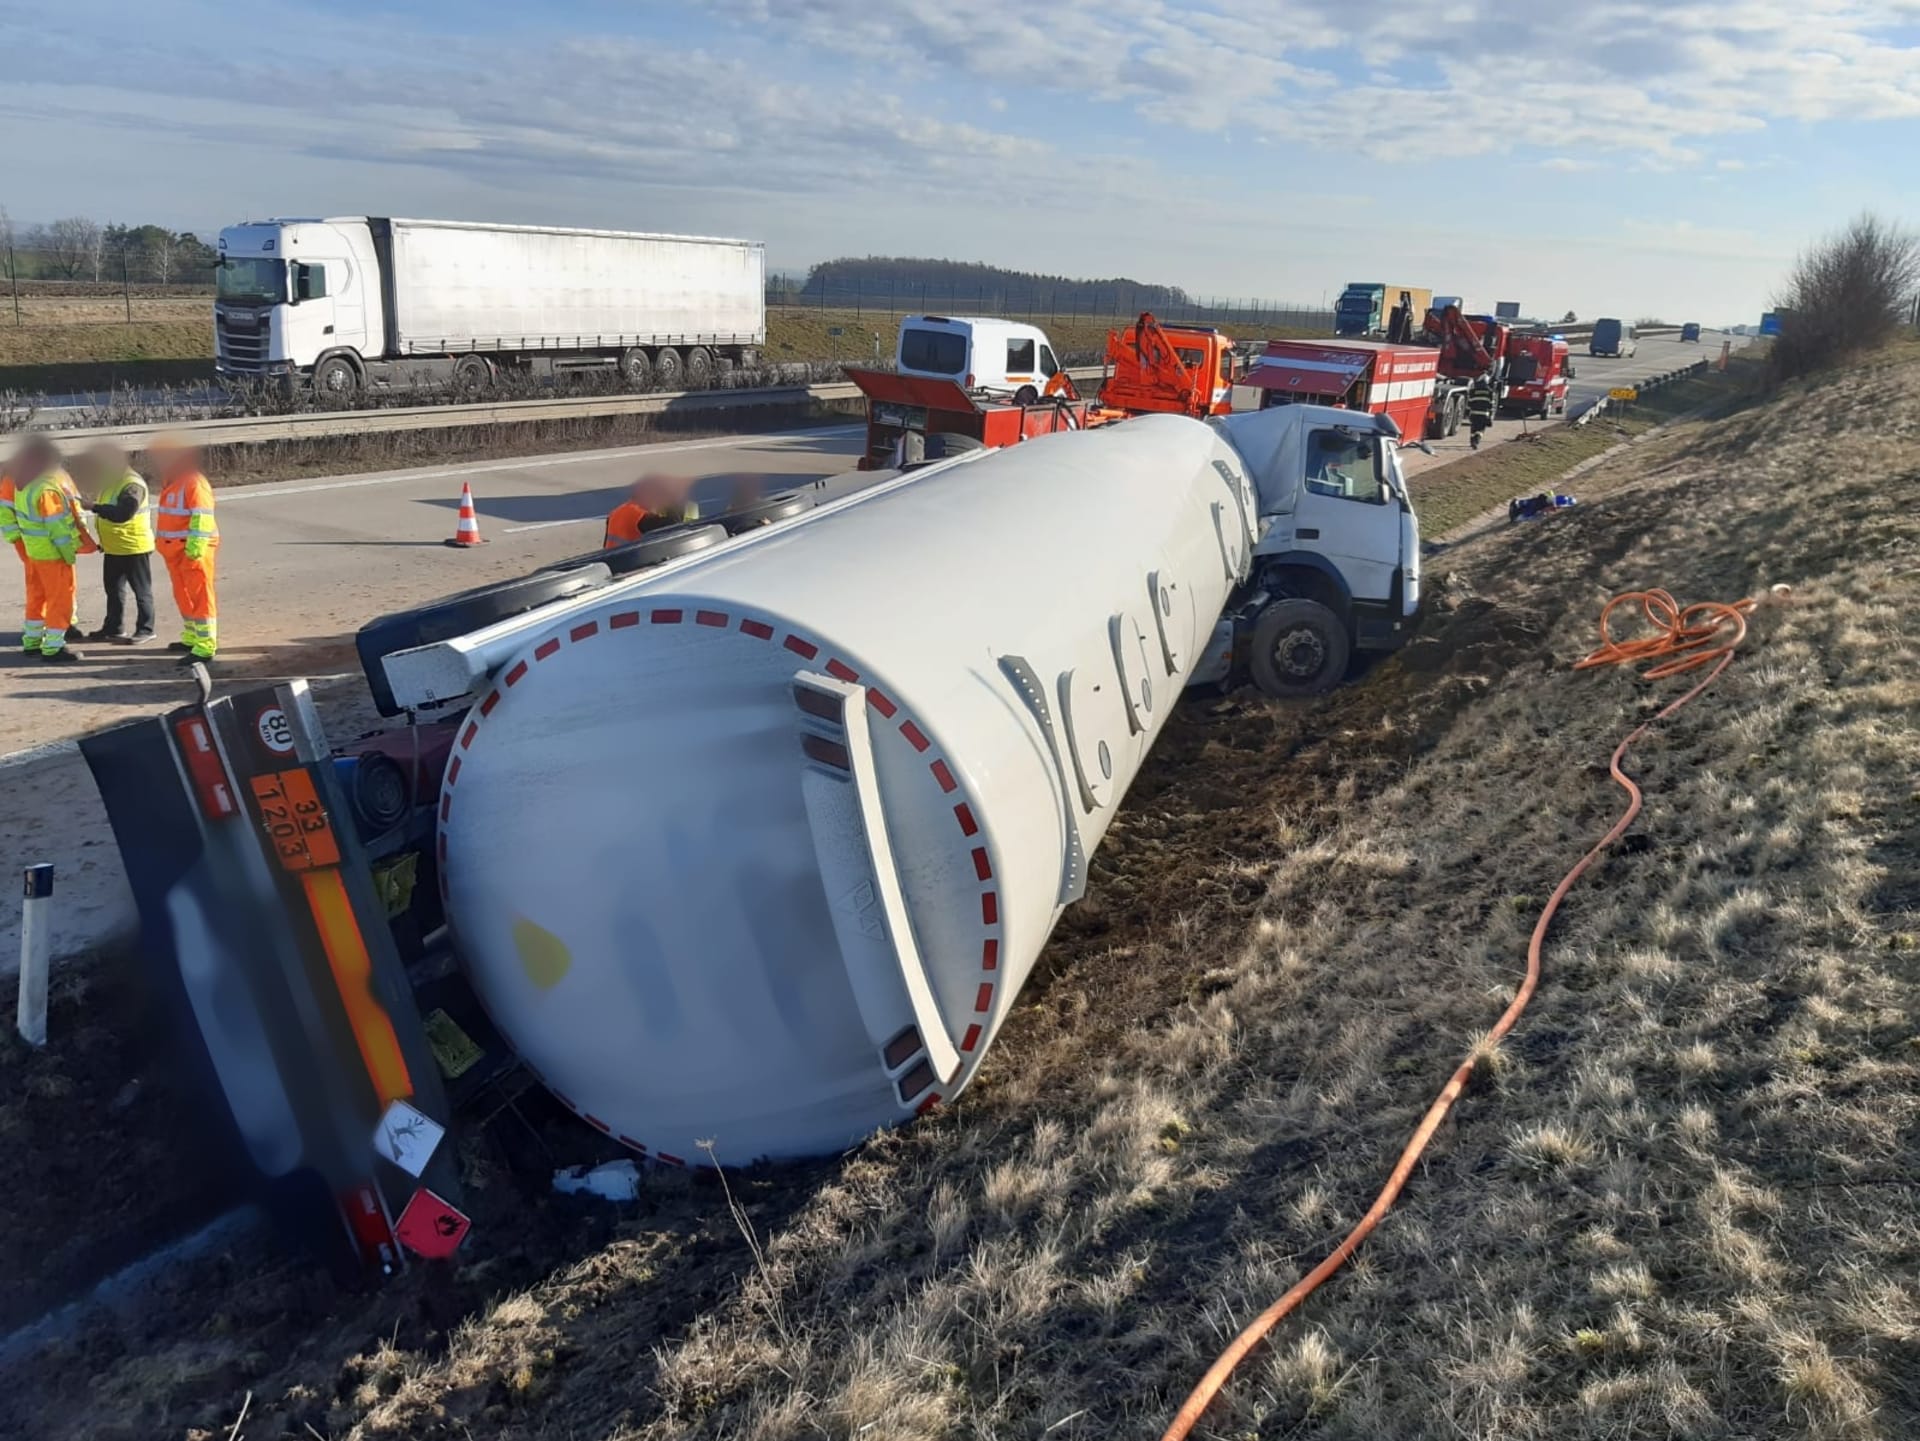 Cisterna převážející benzin a naftu havarovala okolo 6:30 na dálnici na 67. kilometru ve směru na Hradec Králové před sjezdem na Chlumec nad Cidlinou.